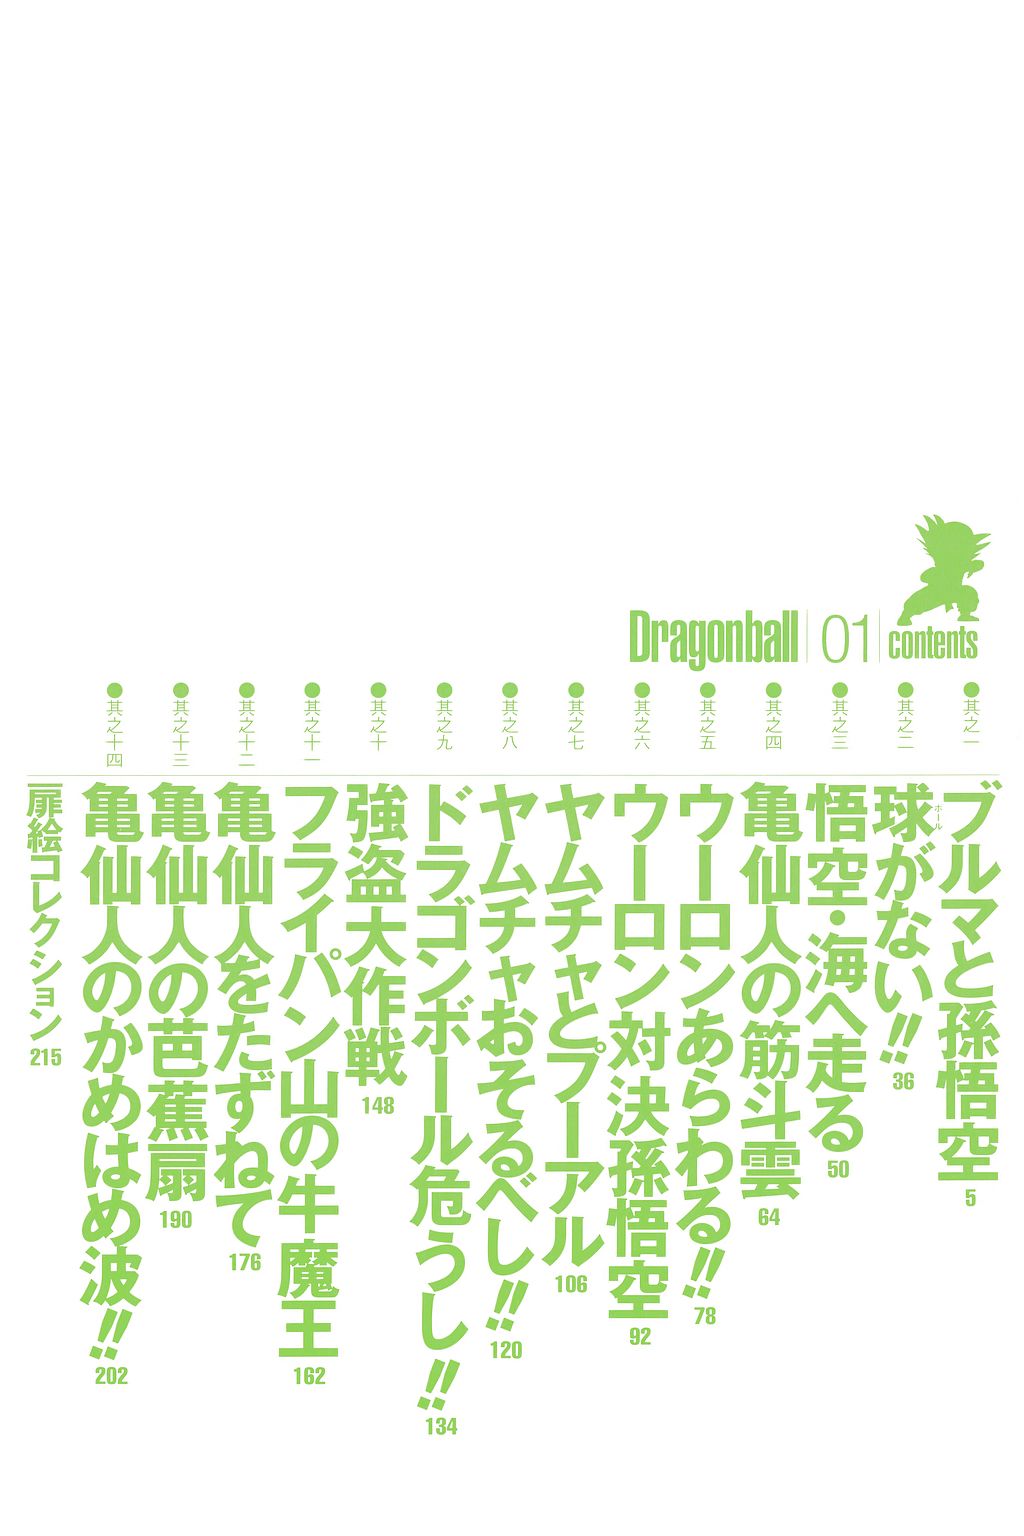 DragonBall01_009.jpg